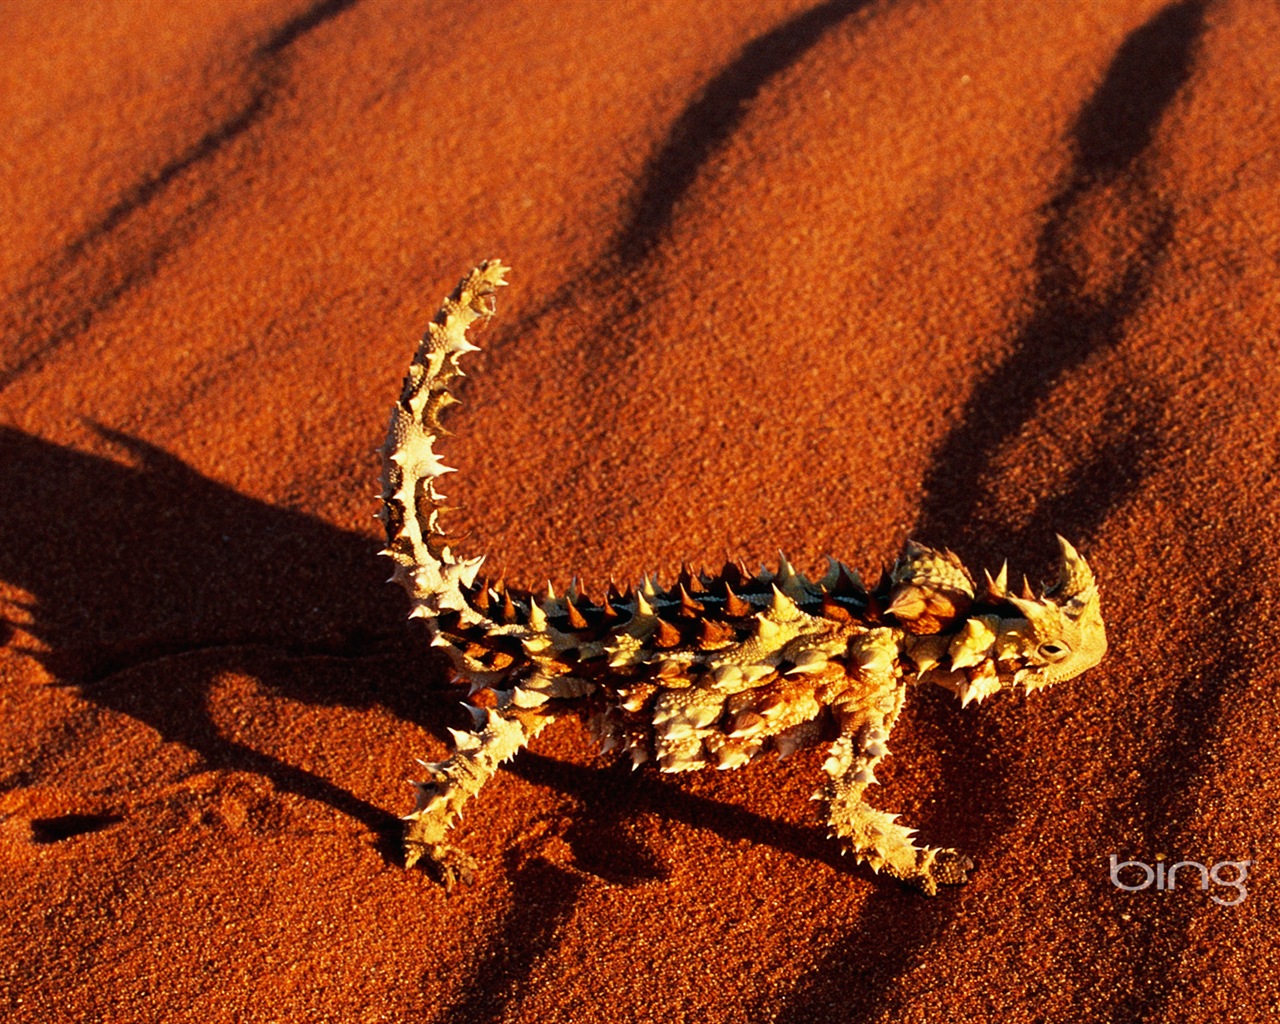 Bing Australie thème fonds d'écran HD, animaux, nature, bâtiments #7 - 1280x1024